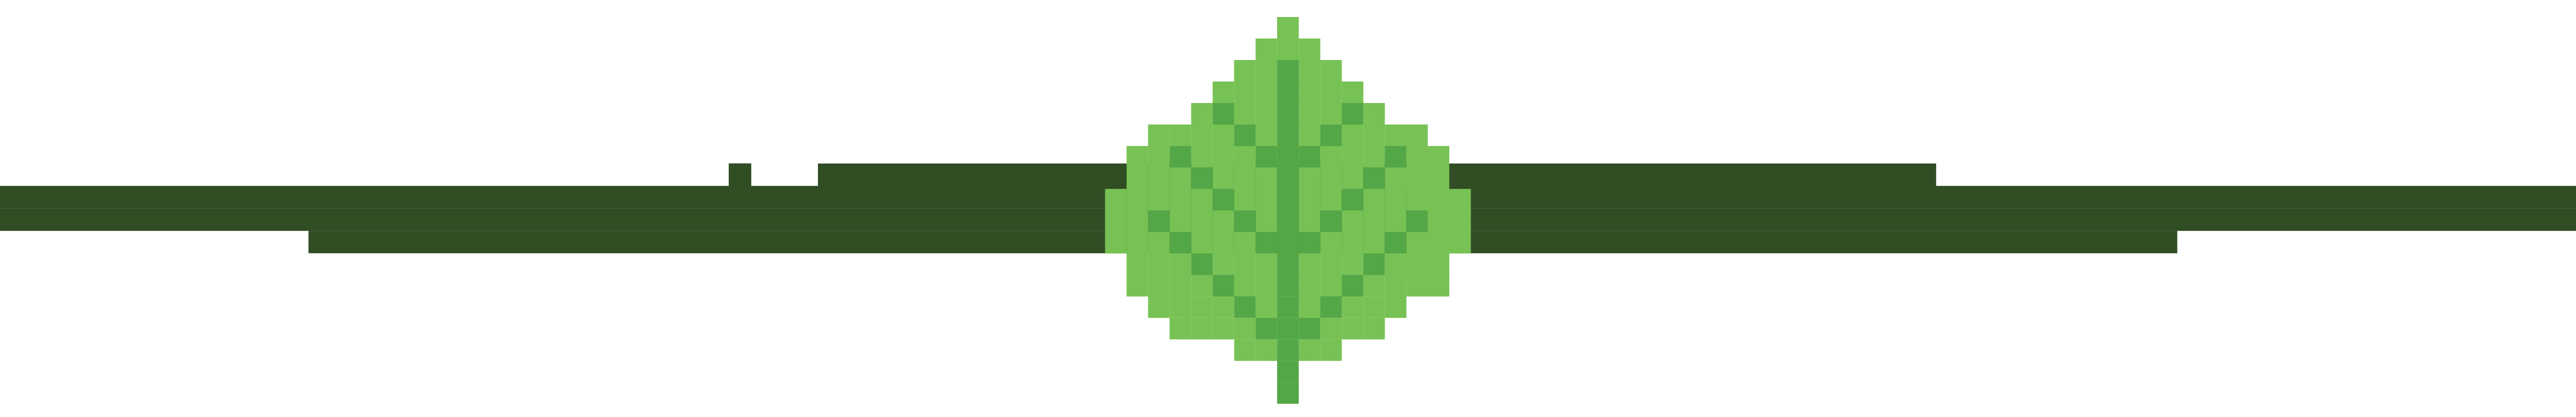 green leaf pixel art